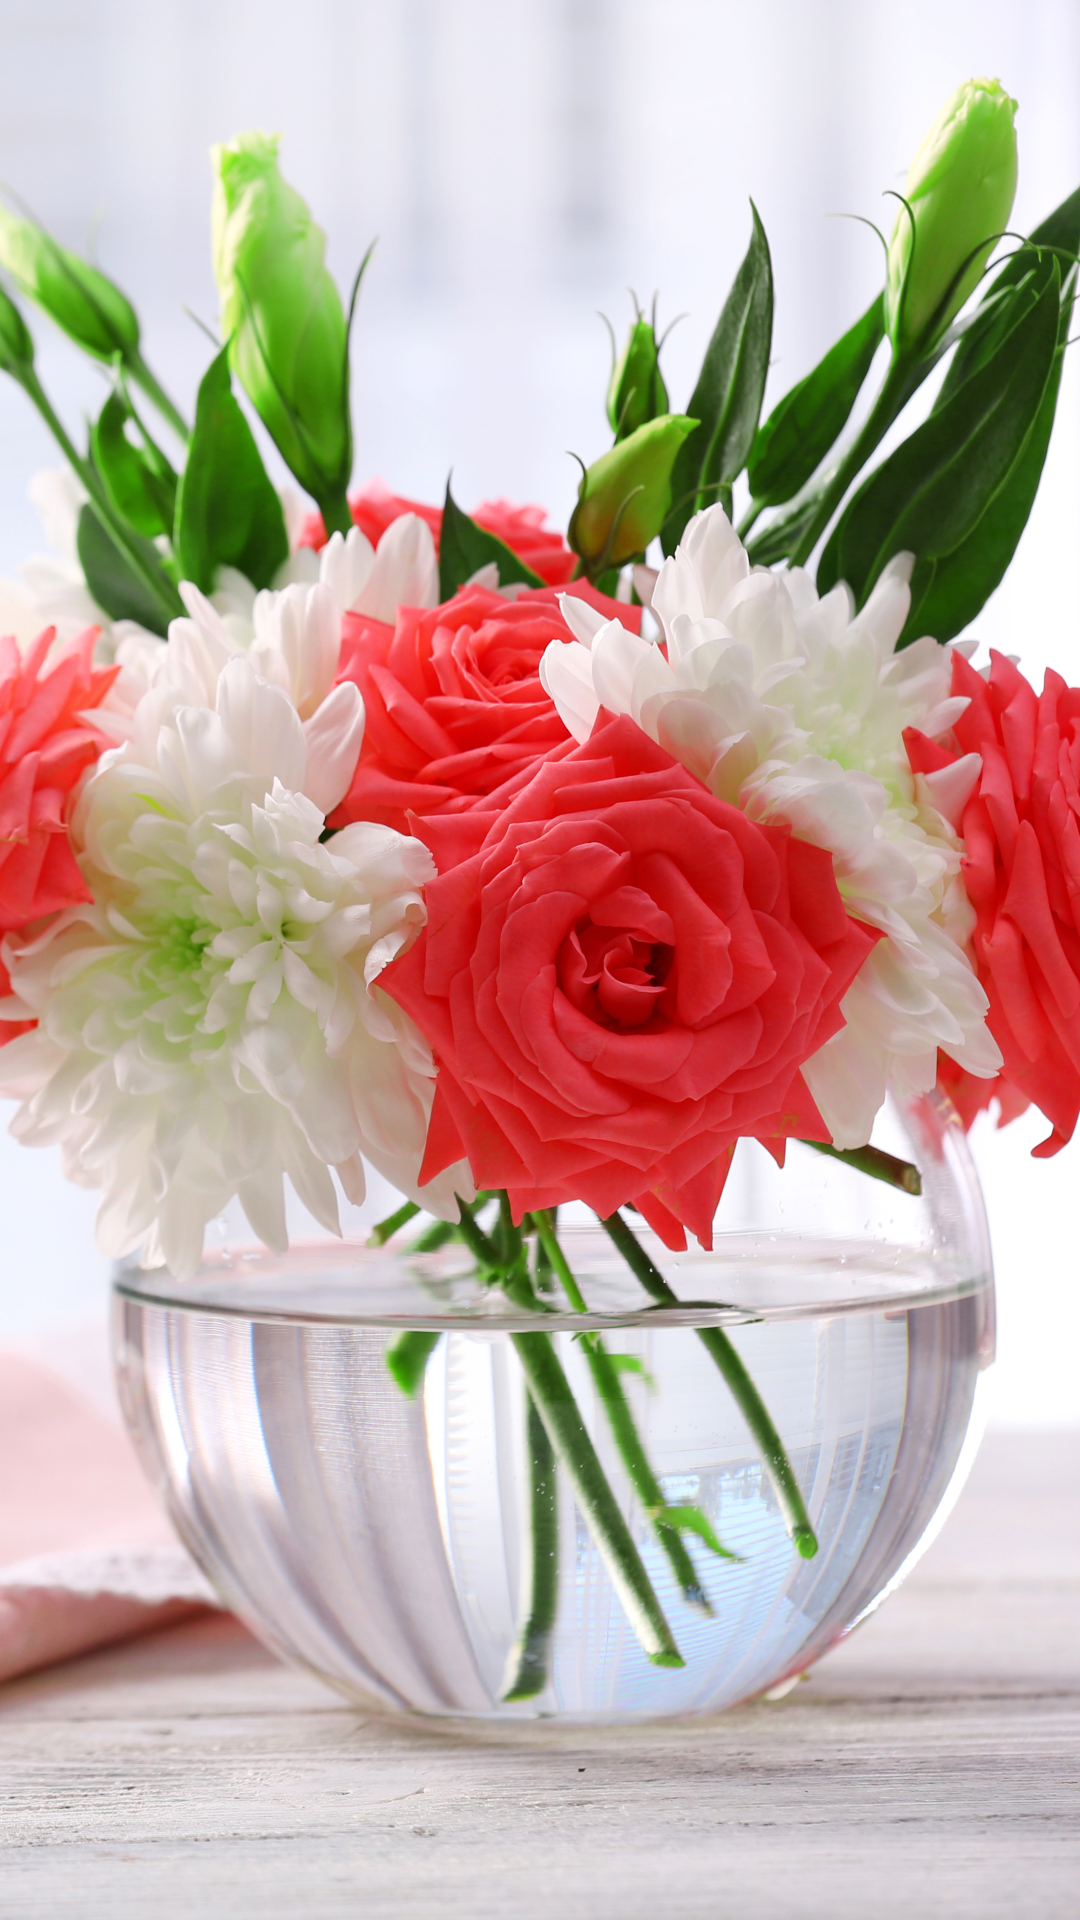 flower, handkerchief, photography, still life, red flower, rose, eustoma, white flower, vase